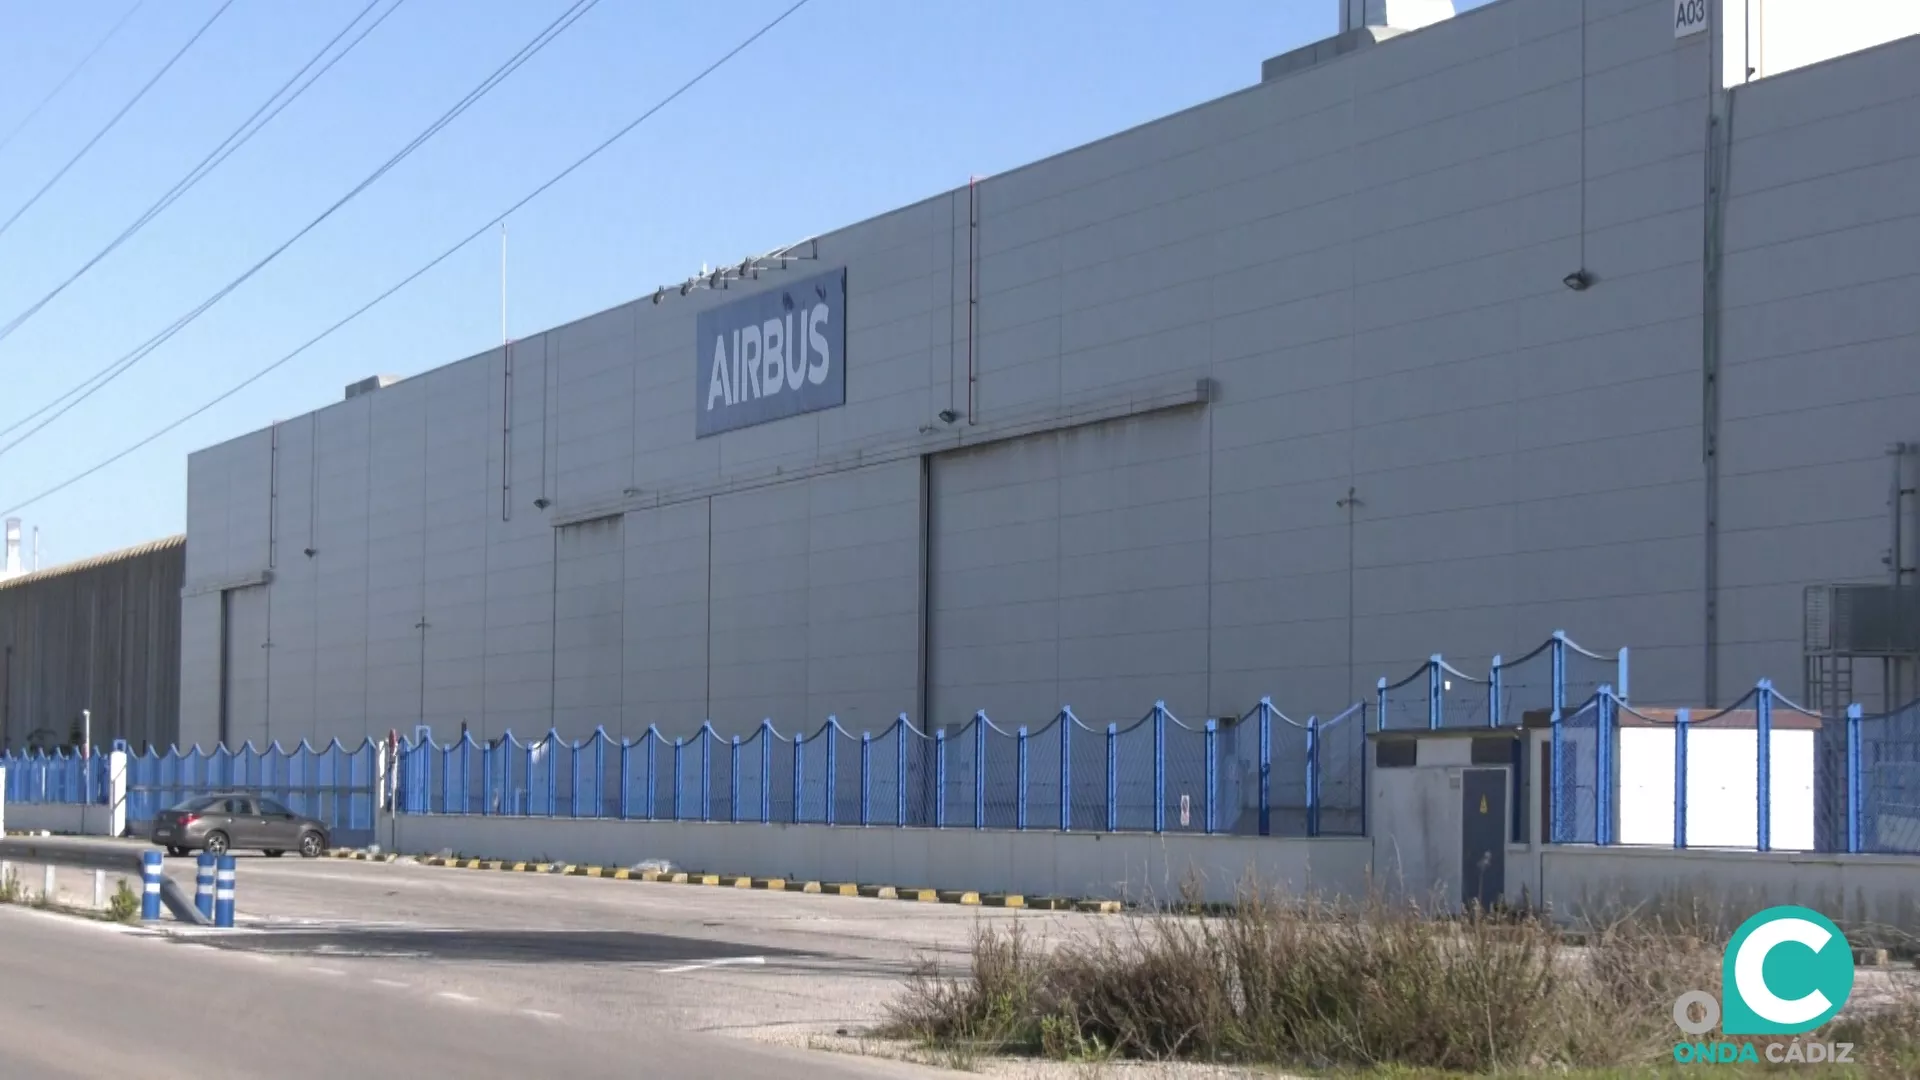 La dirección de Airbus confirma la venta de la planta puertorrealeña al grupo asiático Zhenshi.